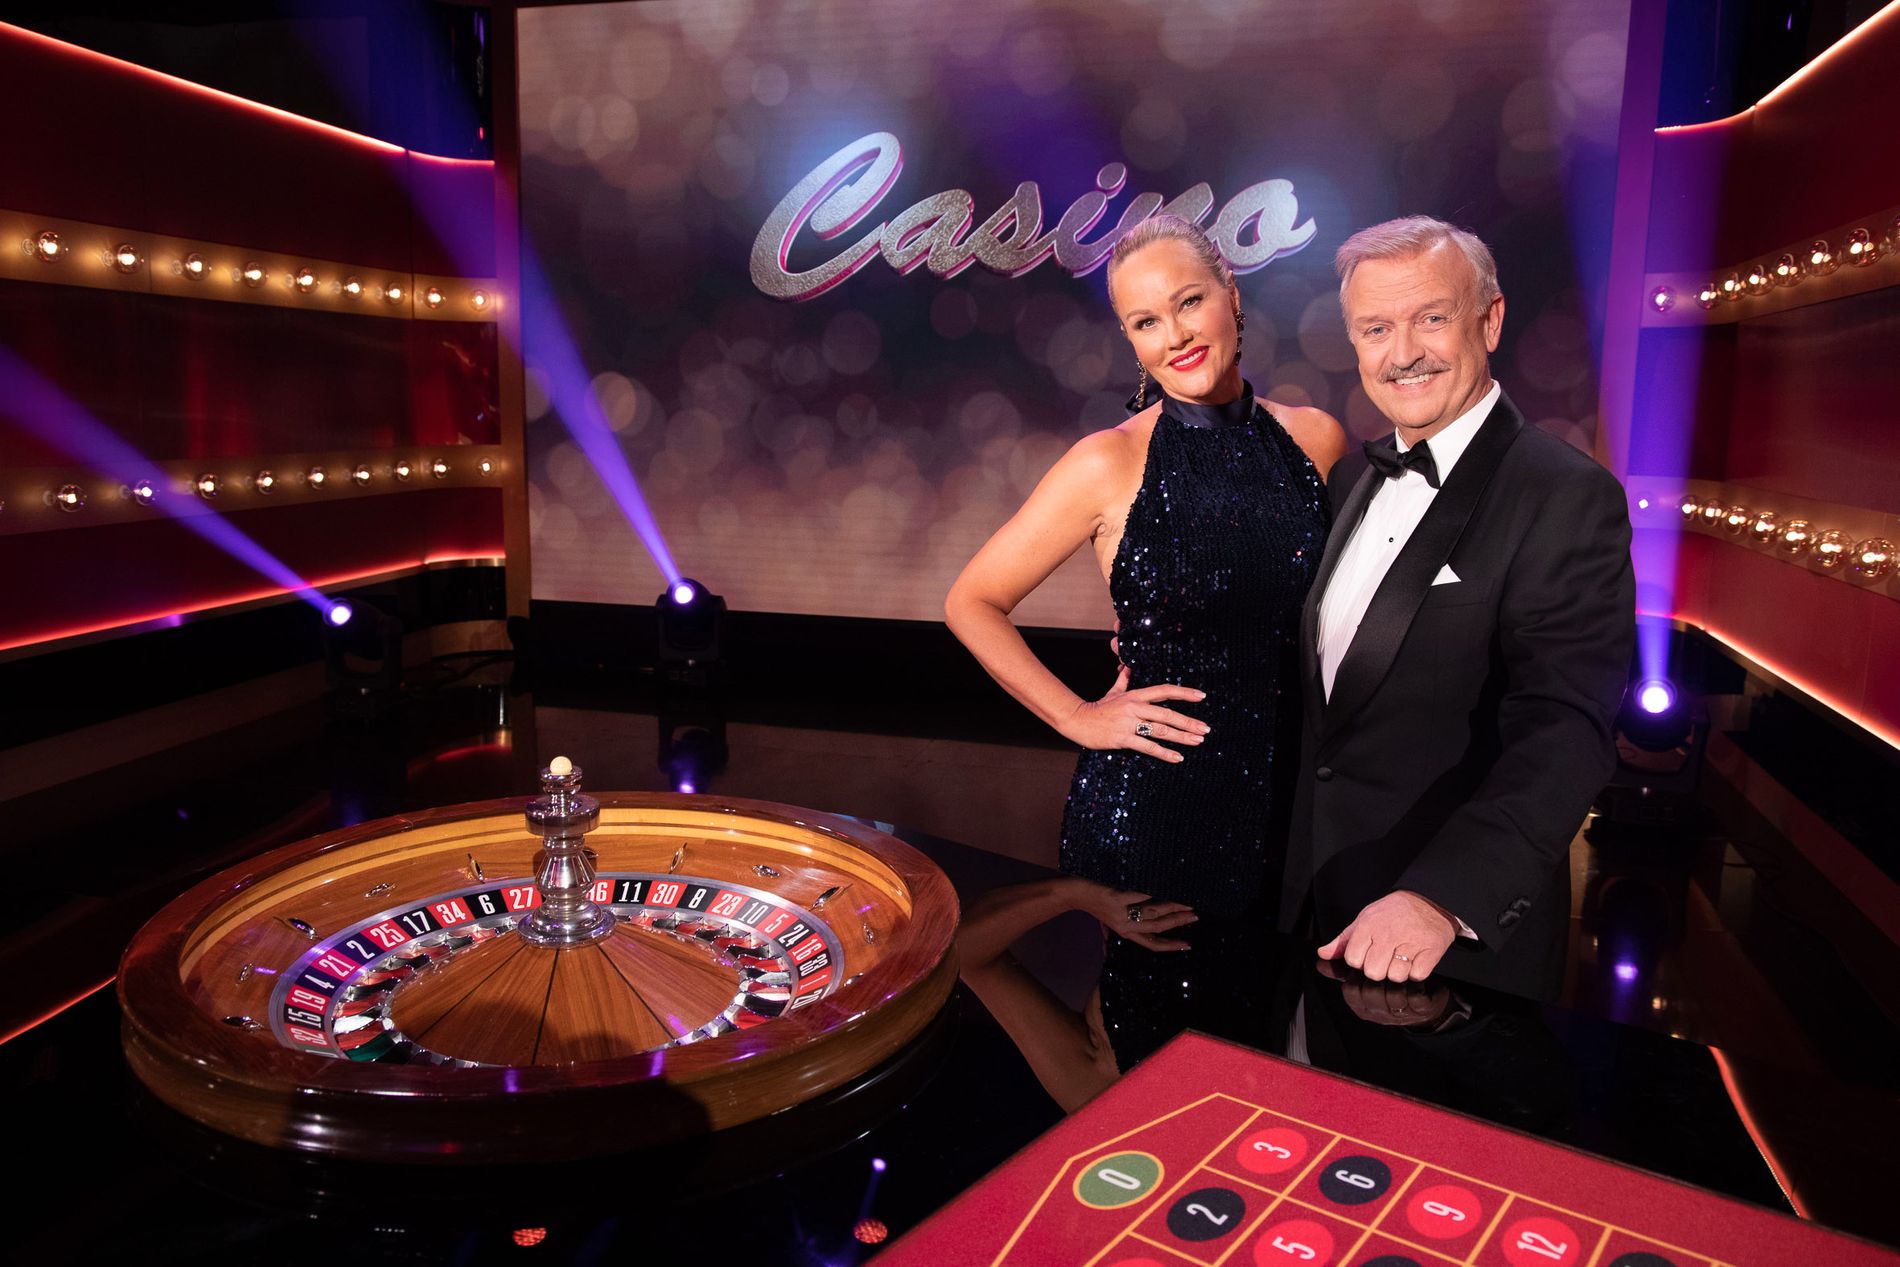 Der Spielsaal 10 Eur Für nüsse online casino 3 euro einzahlen Maklercourtage Bloß Einzahlung